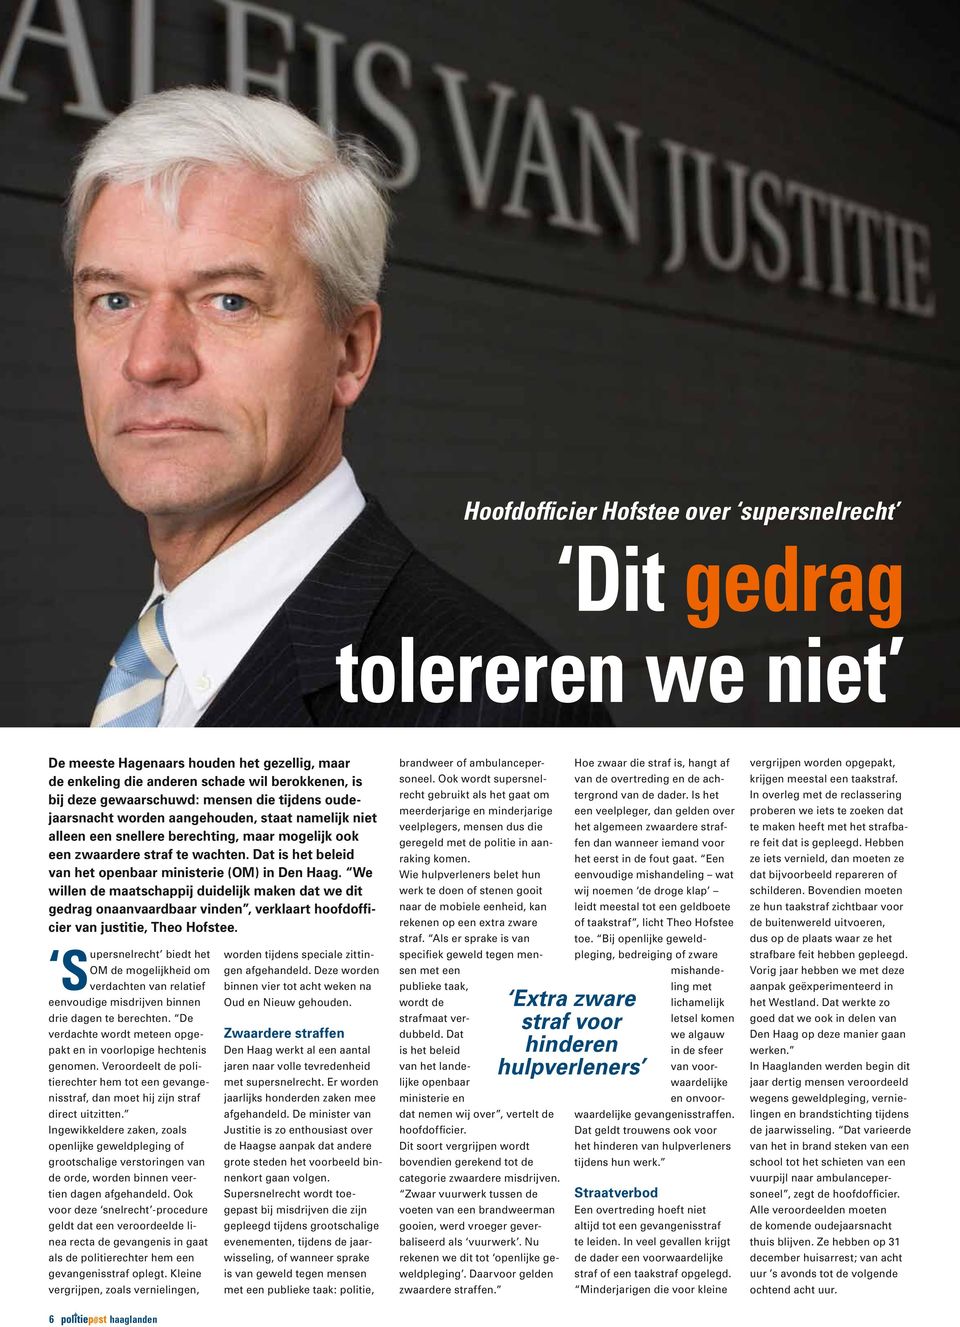 Dat is het beleid van het openbaar ministerie (OM) in Den Haag. We willen de maatschappij duidelijk maken dat we dit gedrag onaanvaardbaar vinden, verklaart hoofdofficier van justitie, Theo Hofstee.